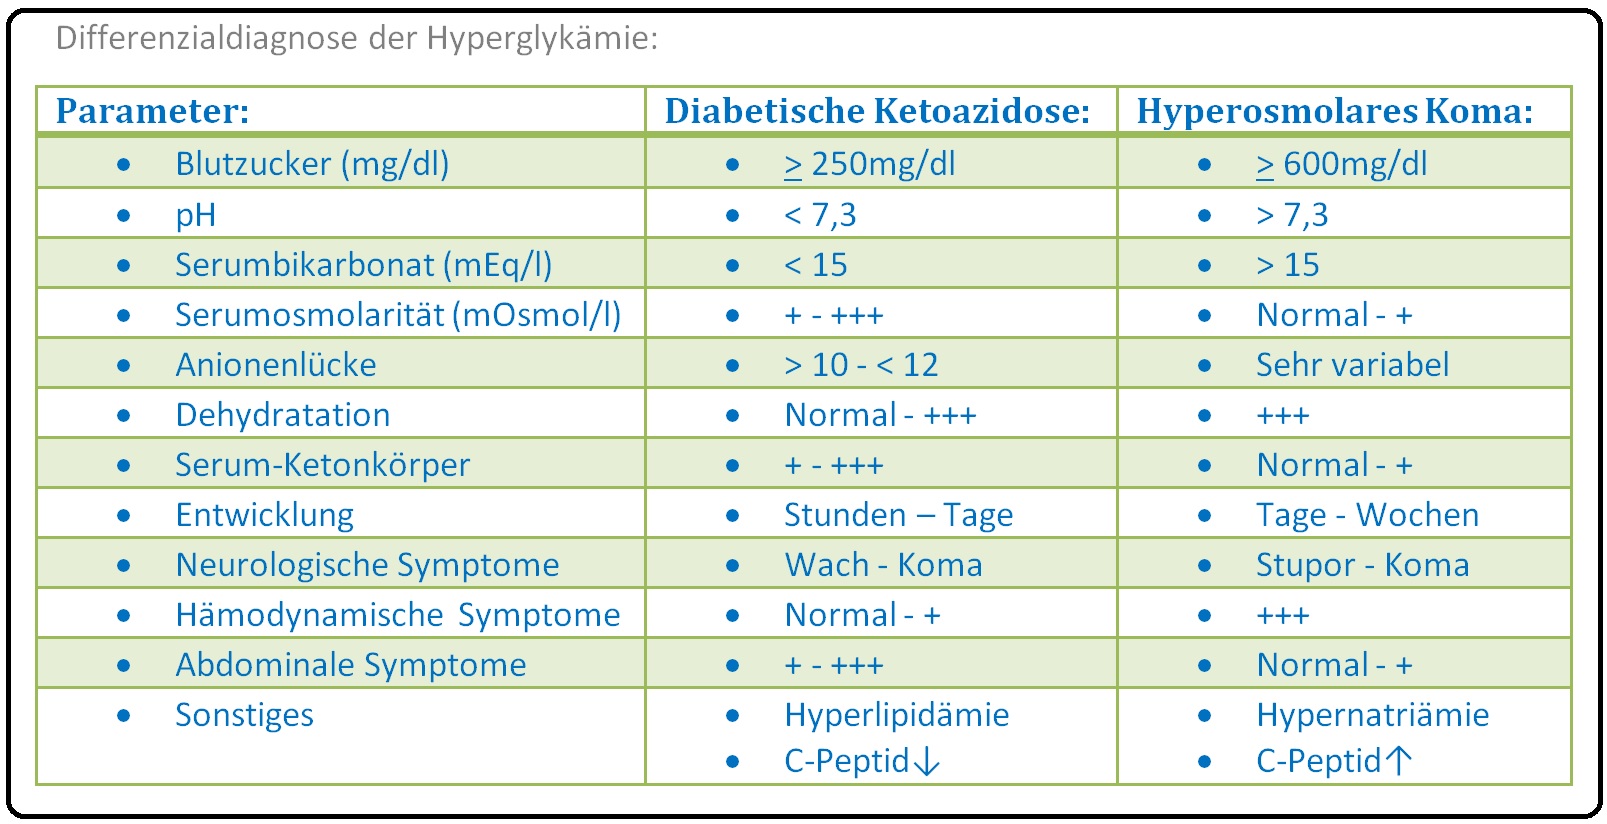 484 Differenzialdiagnose der Hyperglykämie